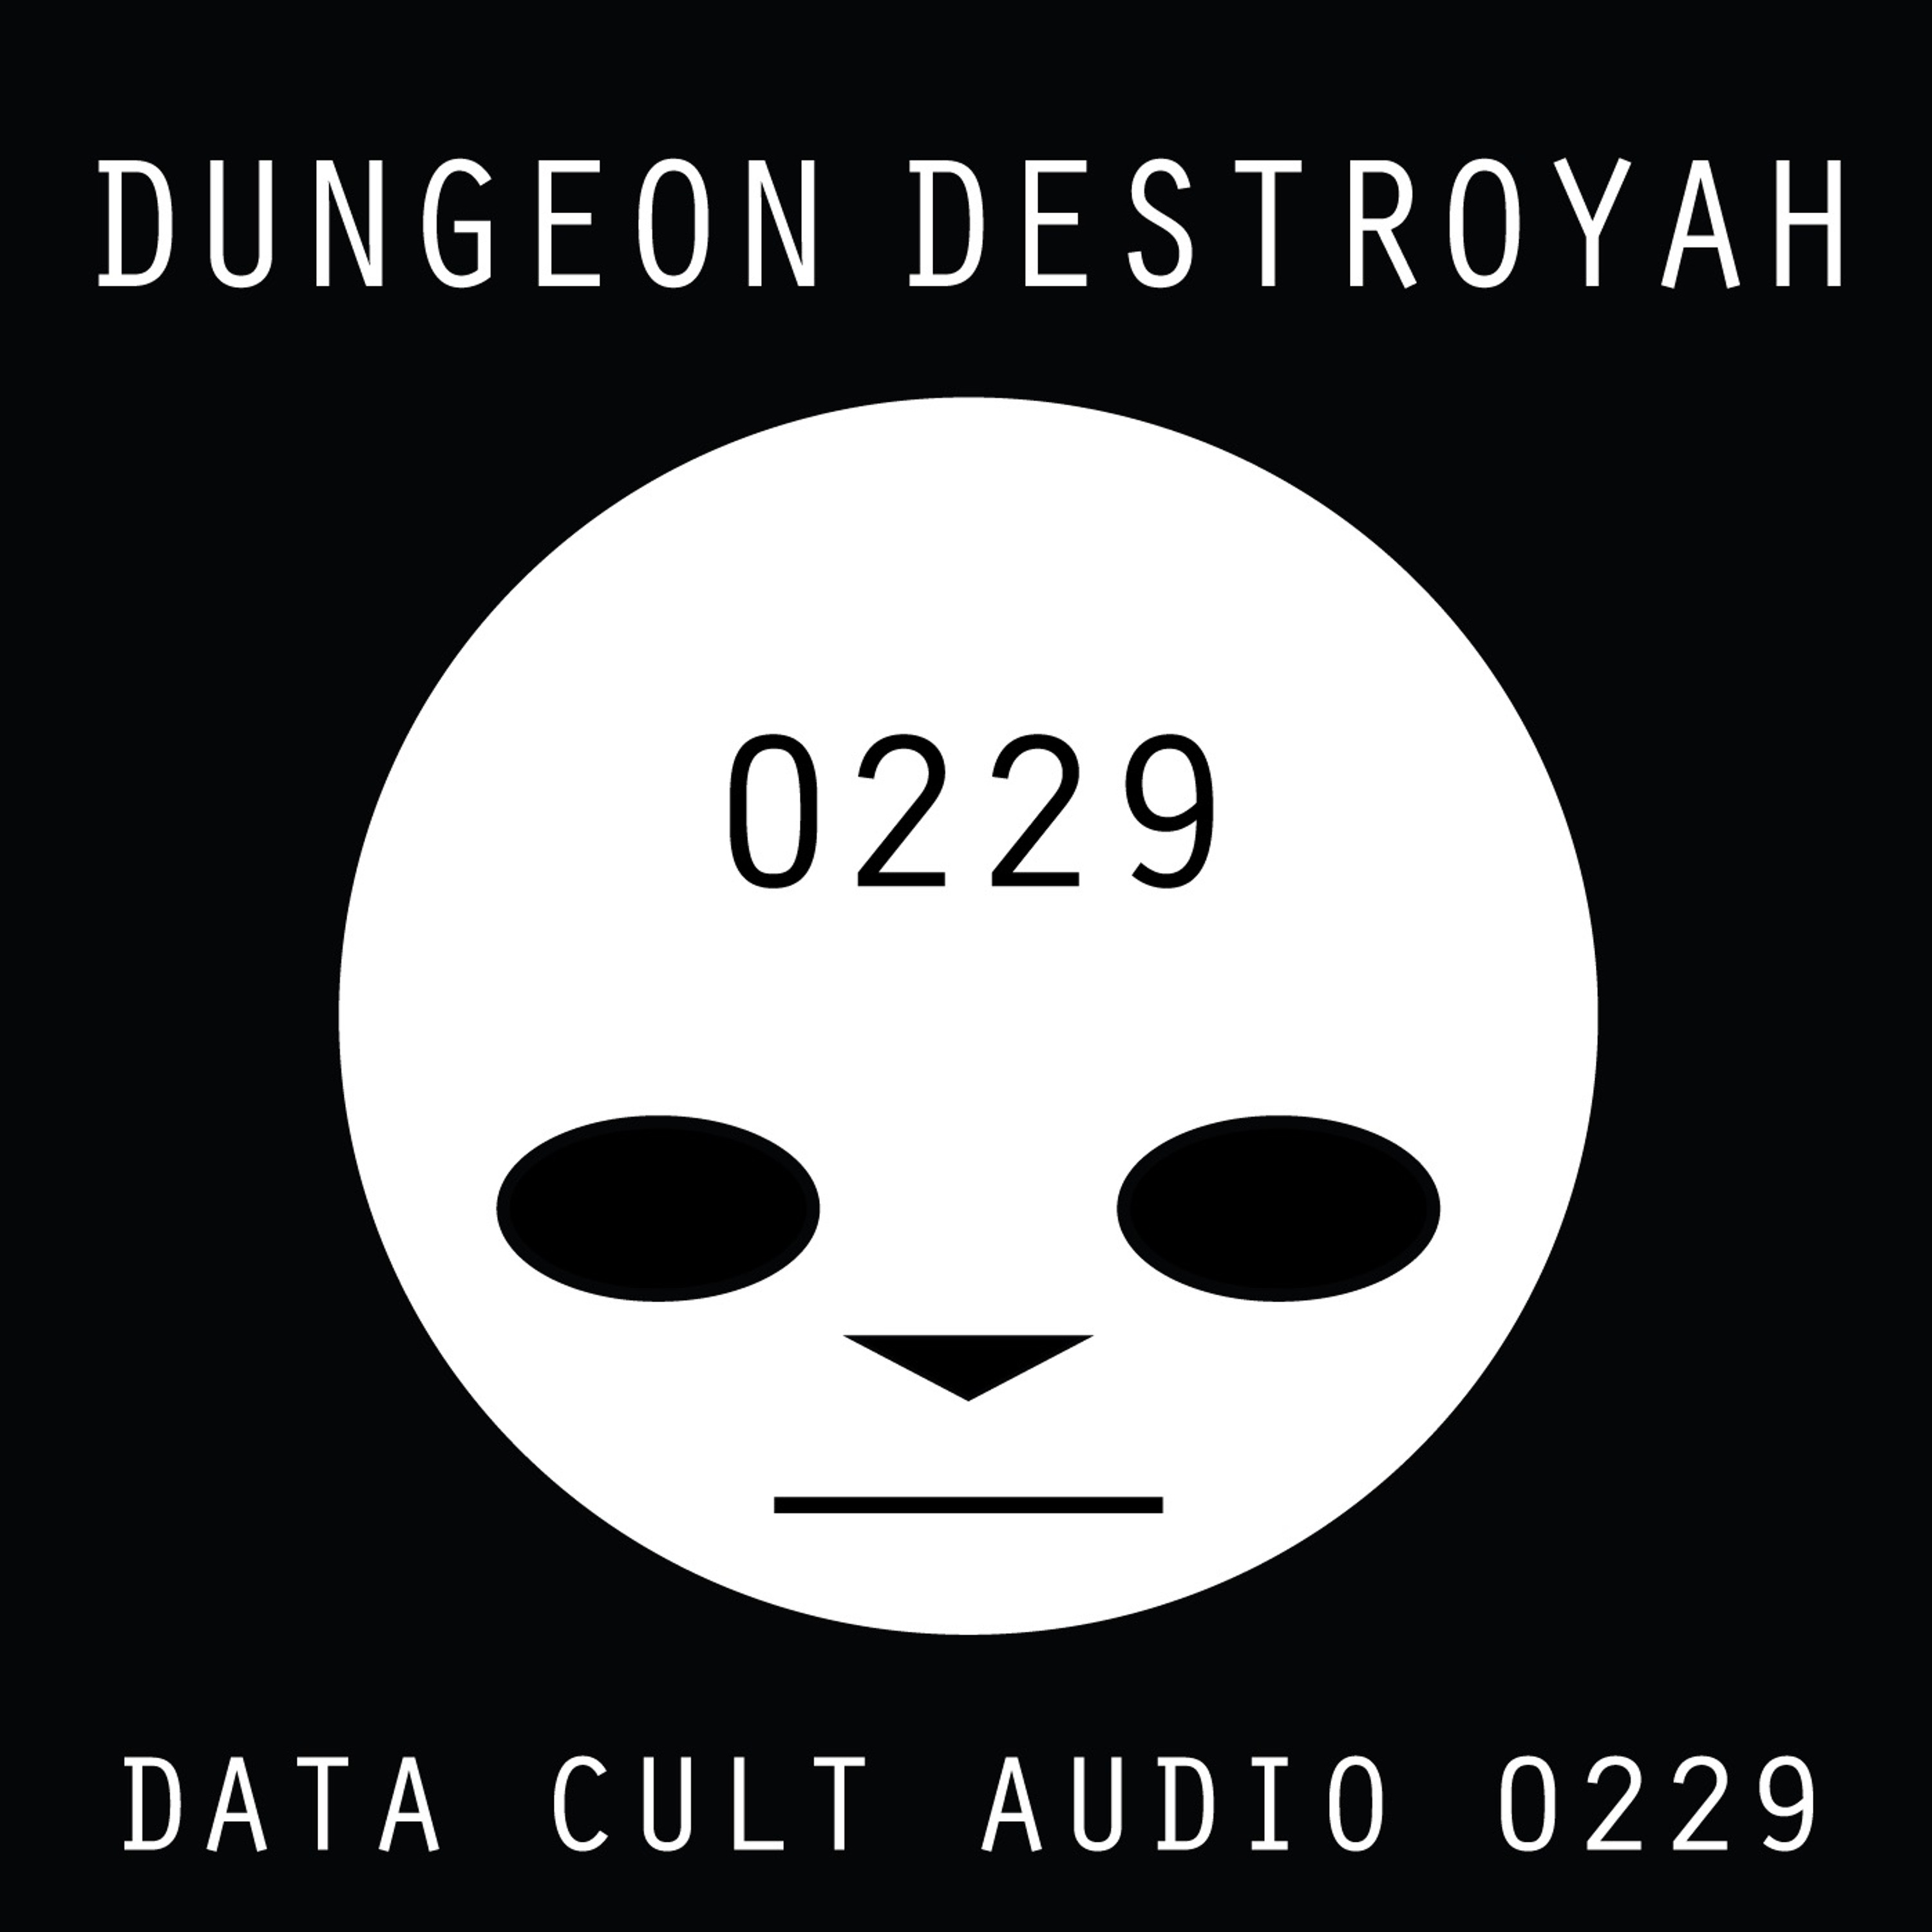 Data Cult Audio 0229 - Dungeon Destroyah